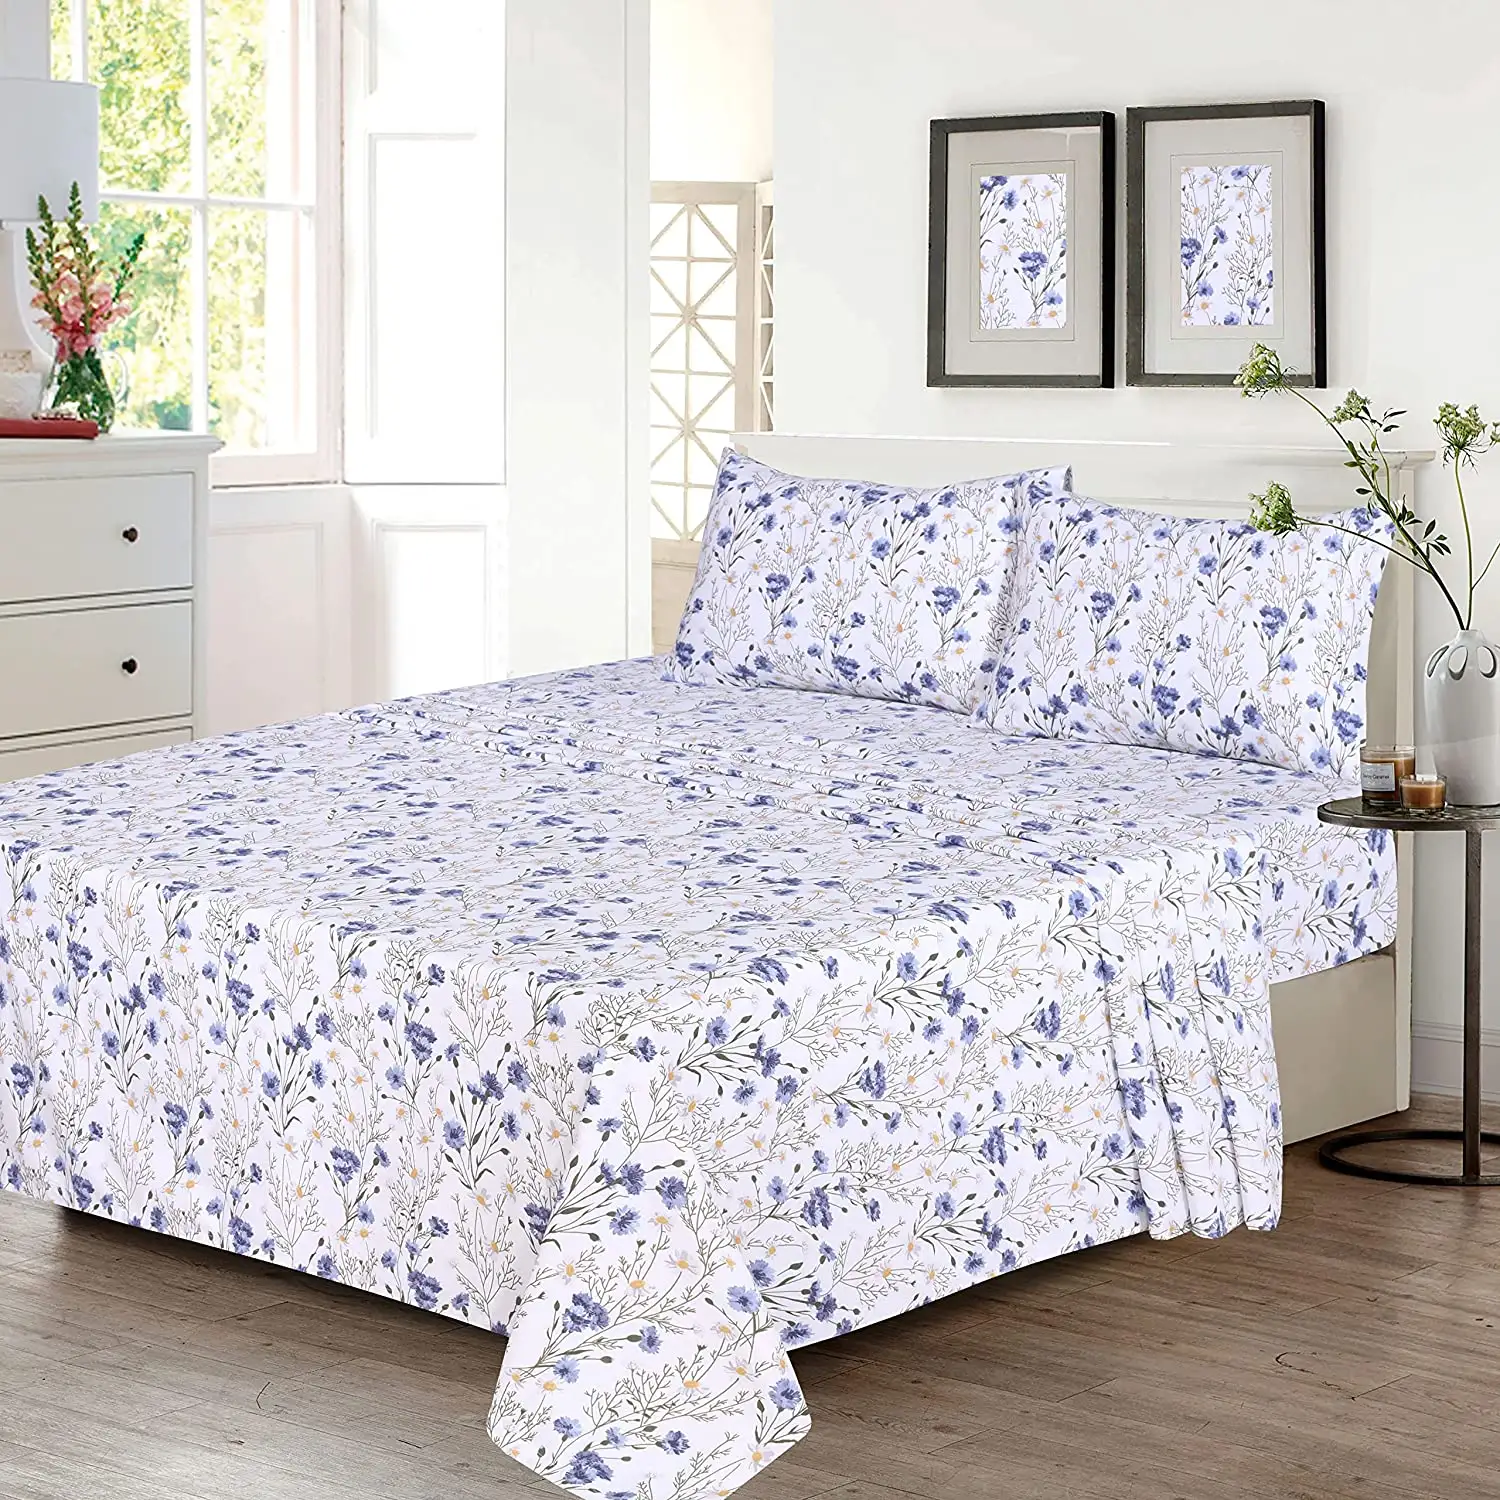 Aoka Beliebter Lieferant Amazon Hot Sale Digital bedruckte Bettwäsche, 4-teilige Bett garnituren, blaue und gelbe Blumen-Bettwäsche in voller Größe